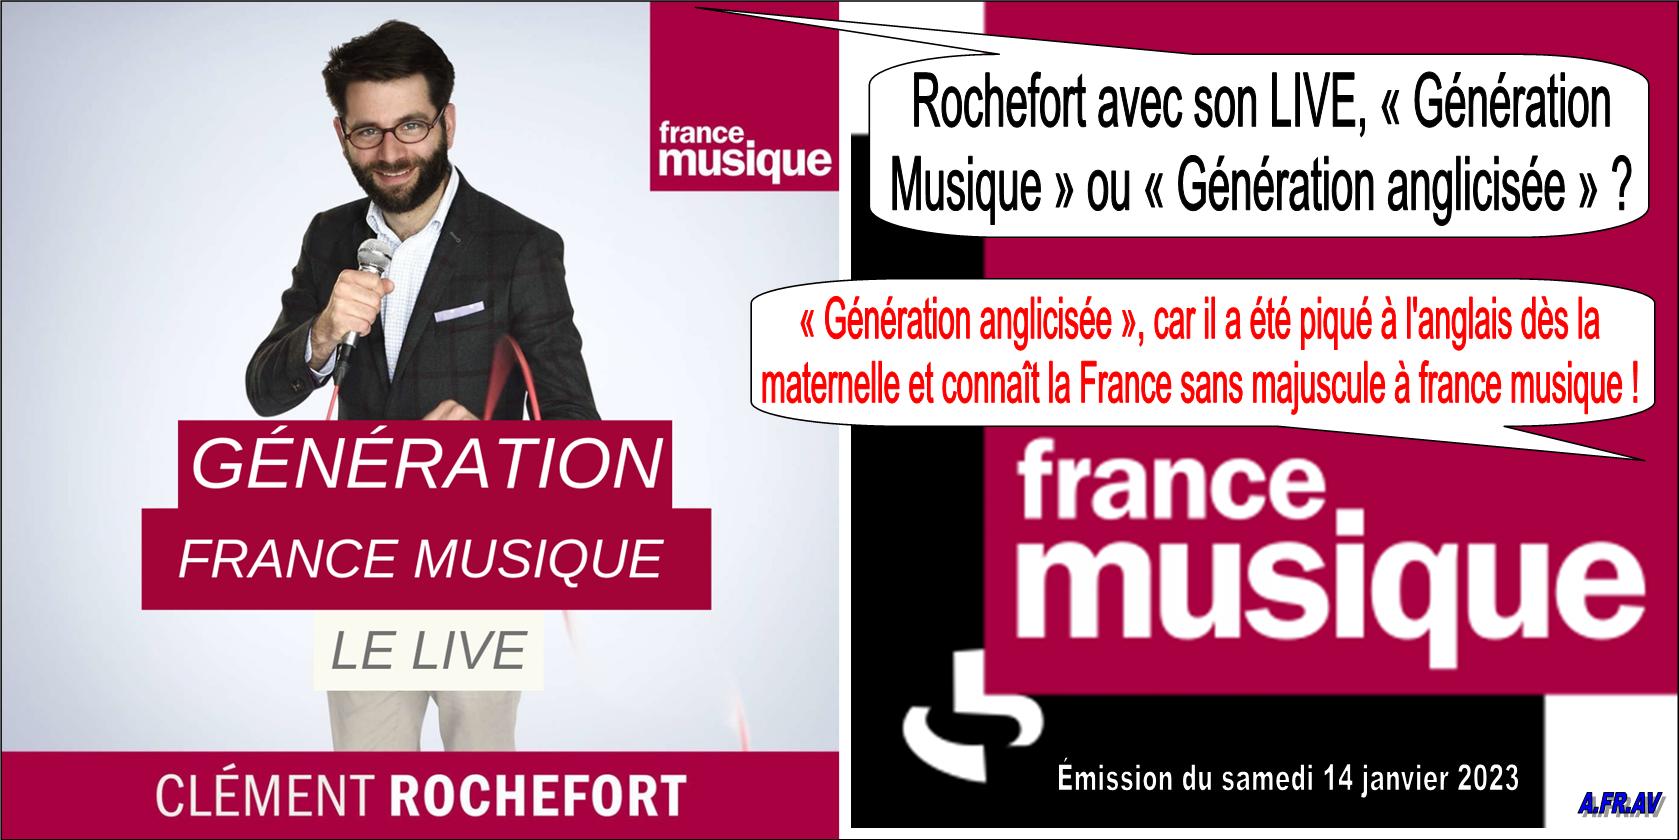 Clément Rochefort, France Musique, génération france musique Le Live